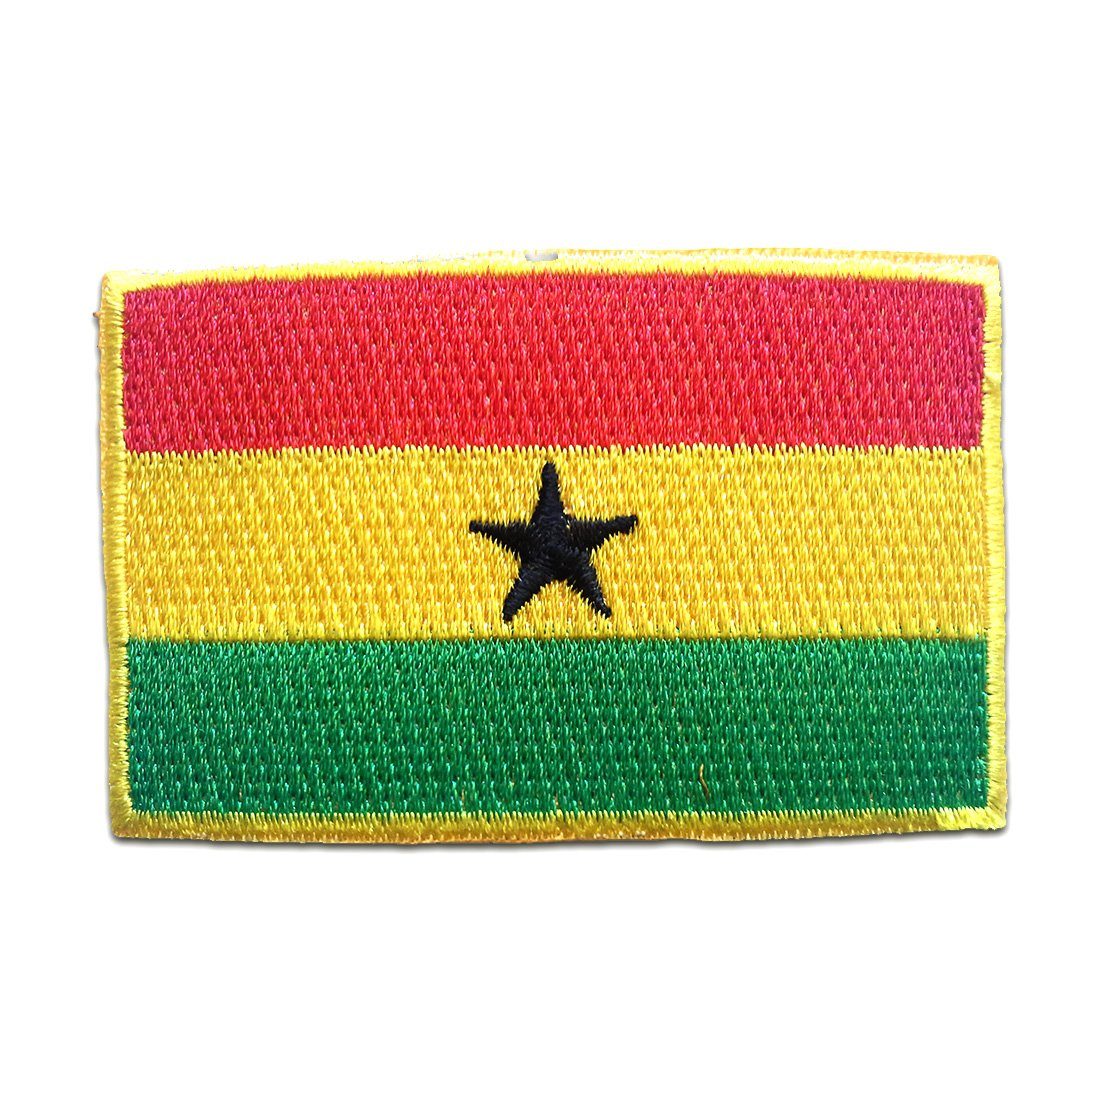 Catch the Patch Aufnäher Bügelbild, Aufbügler, Applikationen, Patches, Flicken, zum aufbügeln, Polyester, Ghana Flagge Fahne - Größe: 4,7 x 7,4 cm